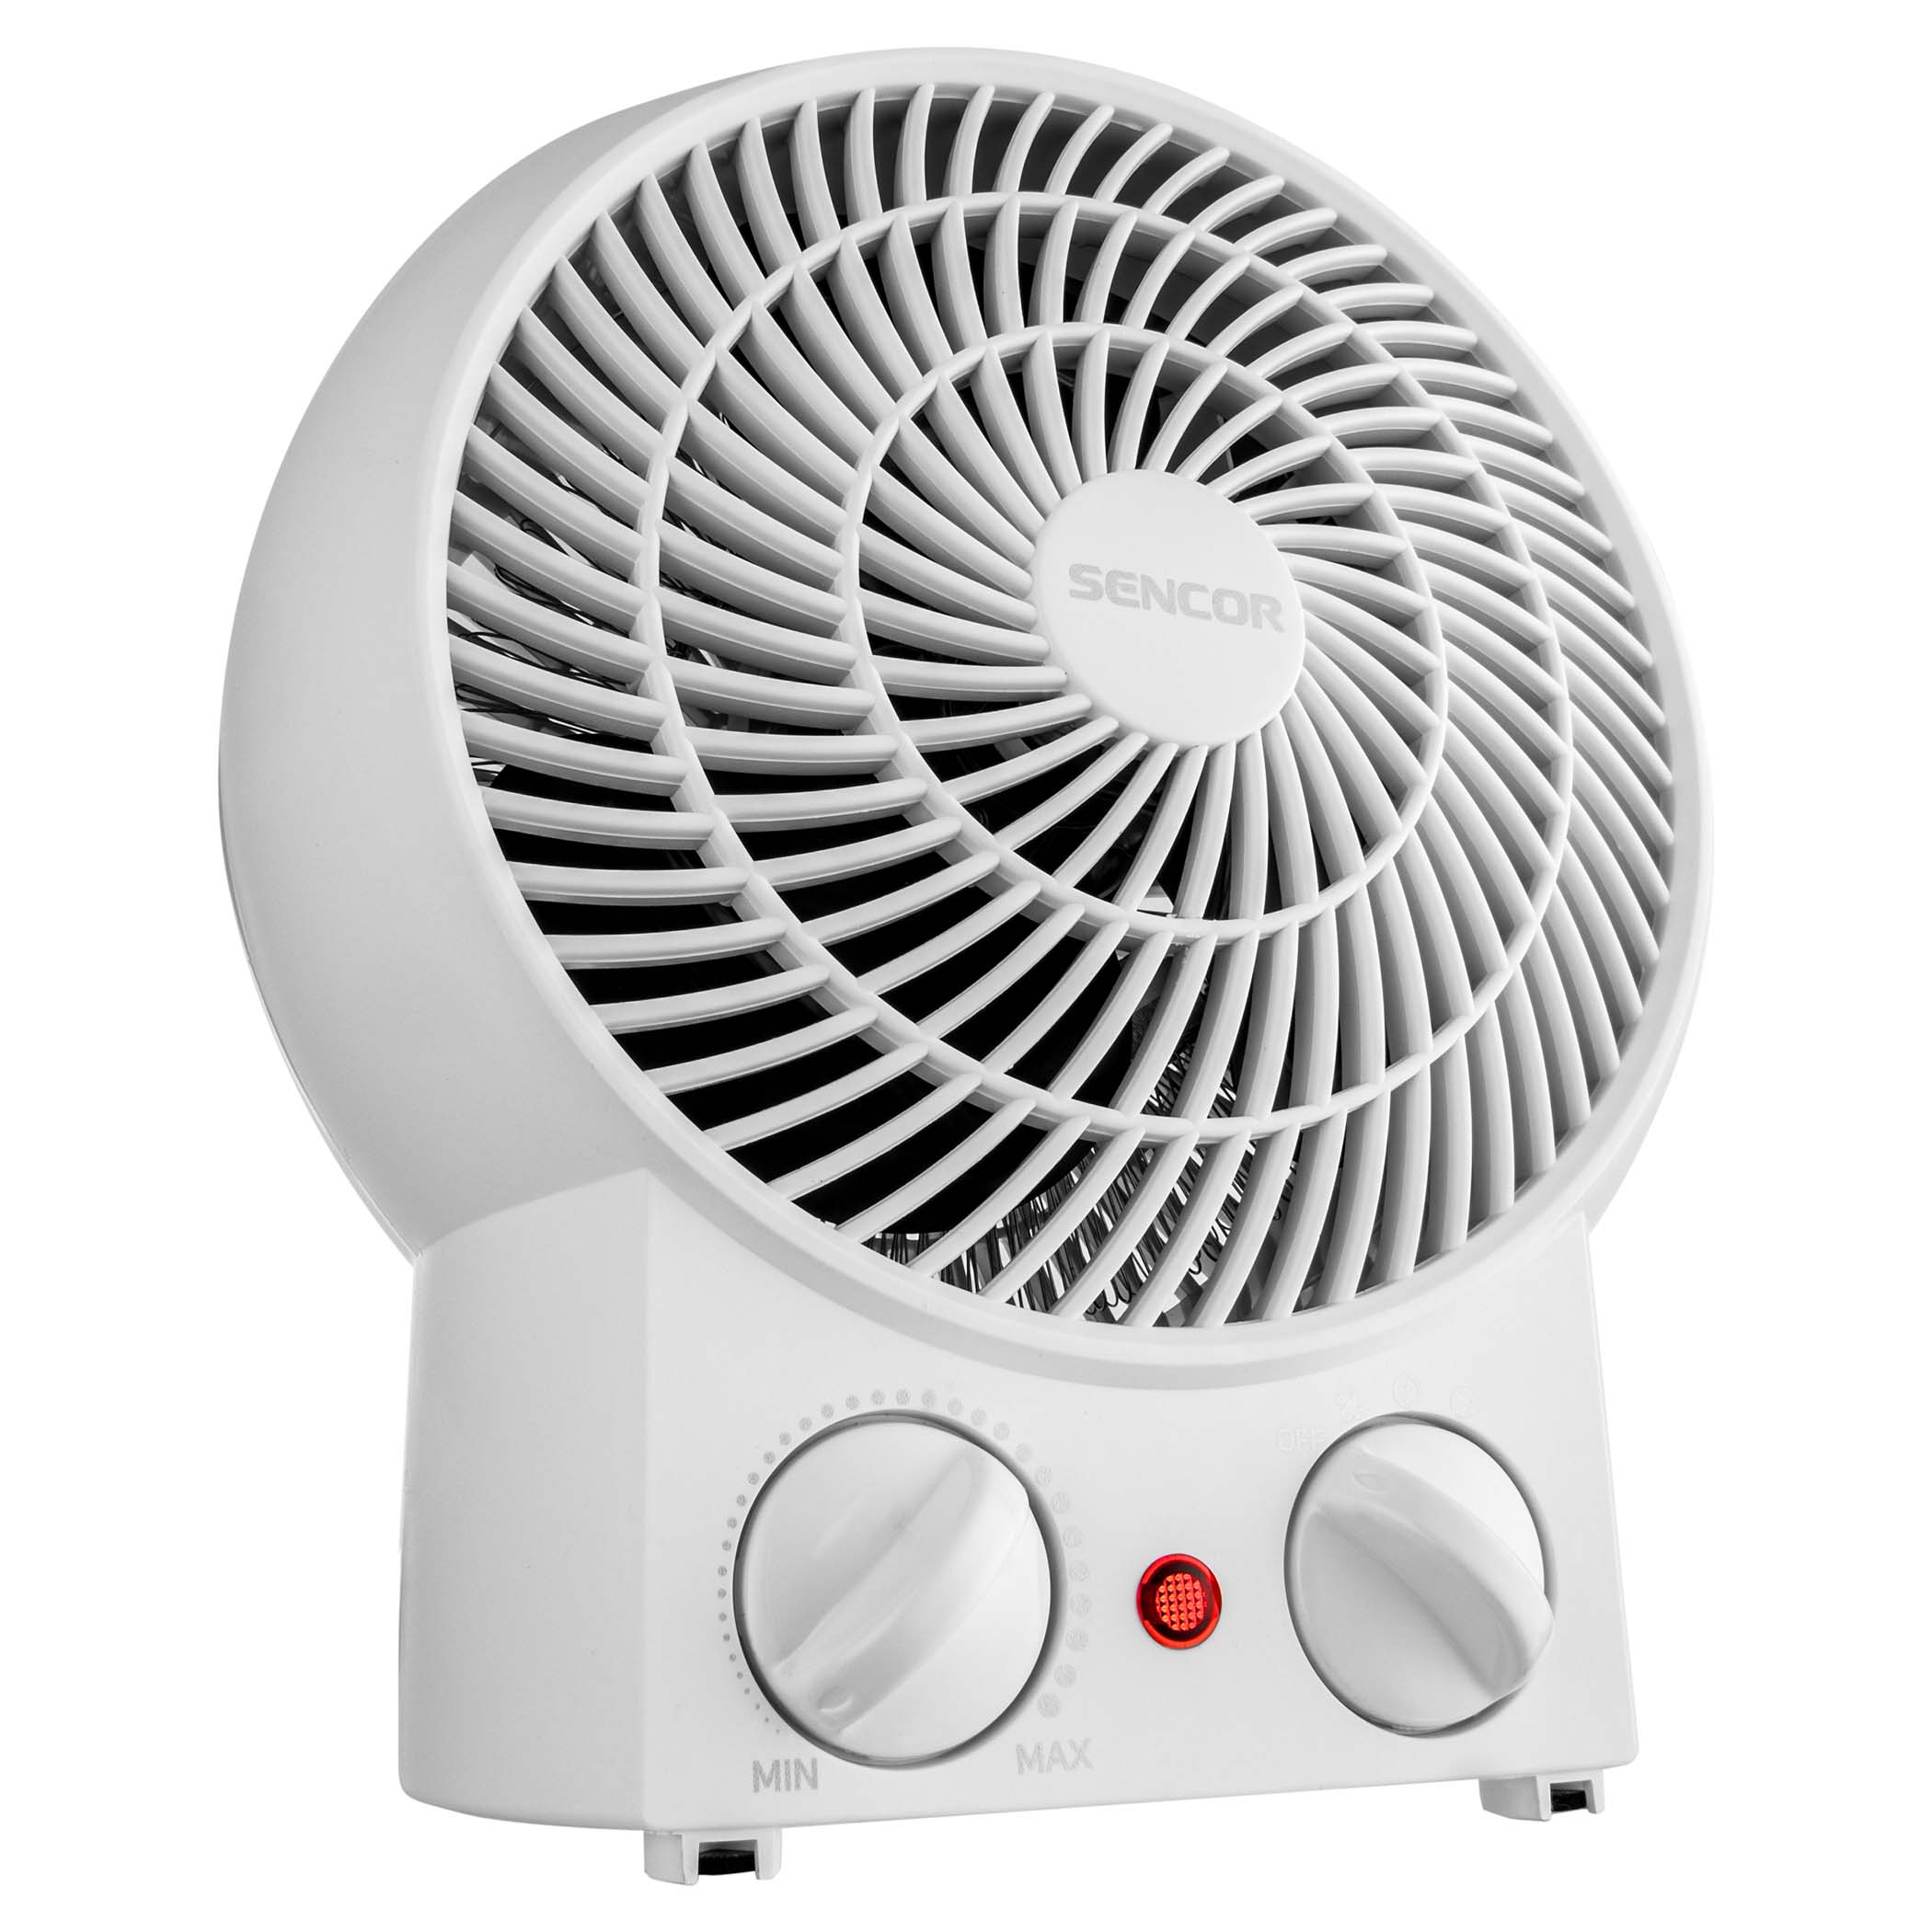 Ventilatore aria calda, SFH 7020WH